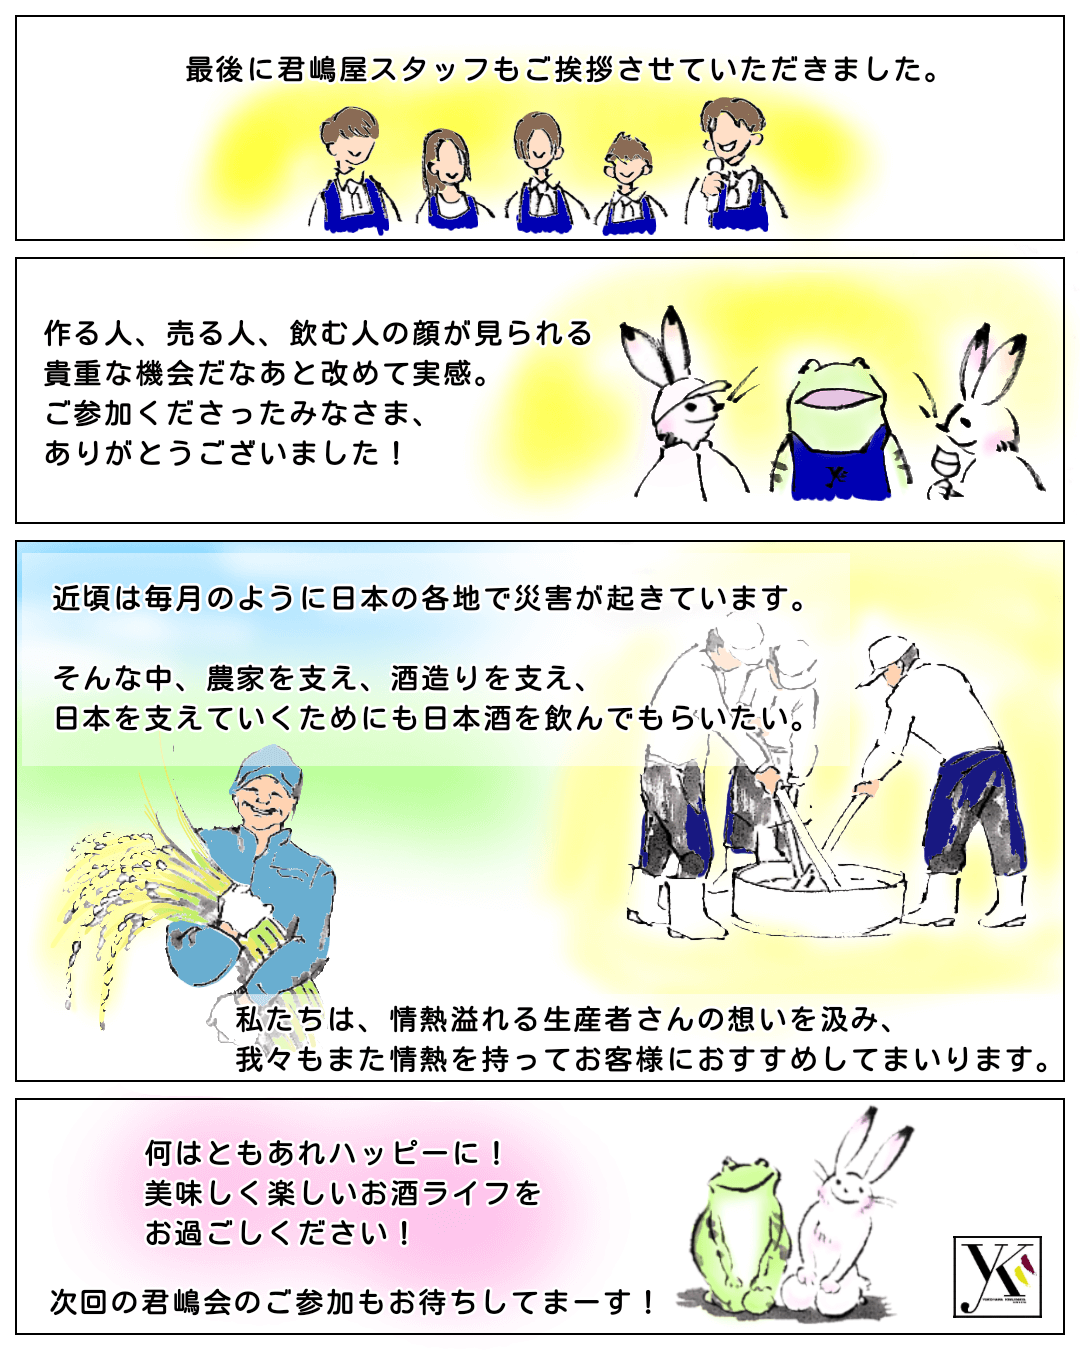 
レポート漫画「君嶋会４」